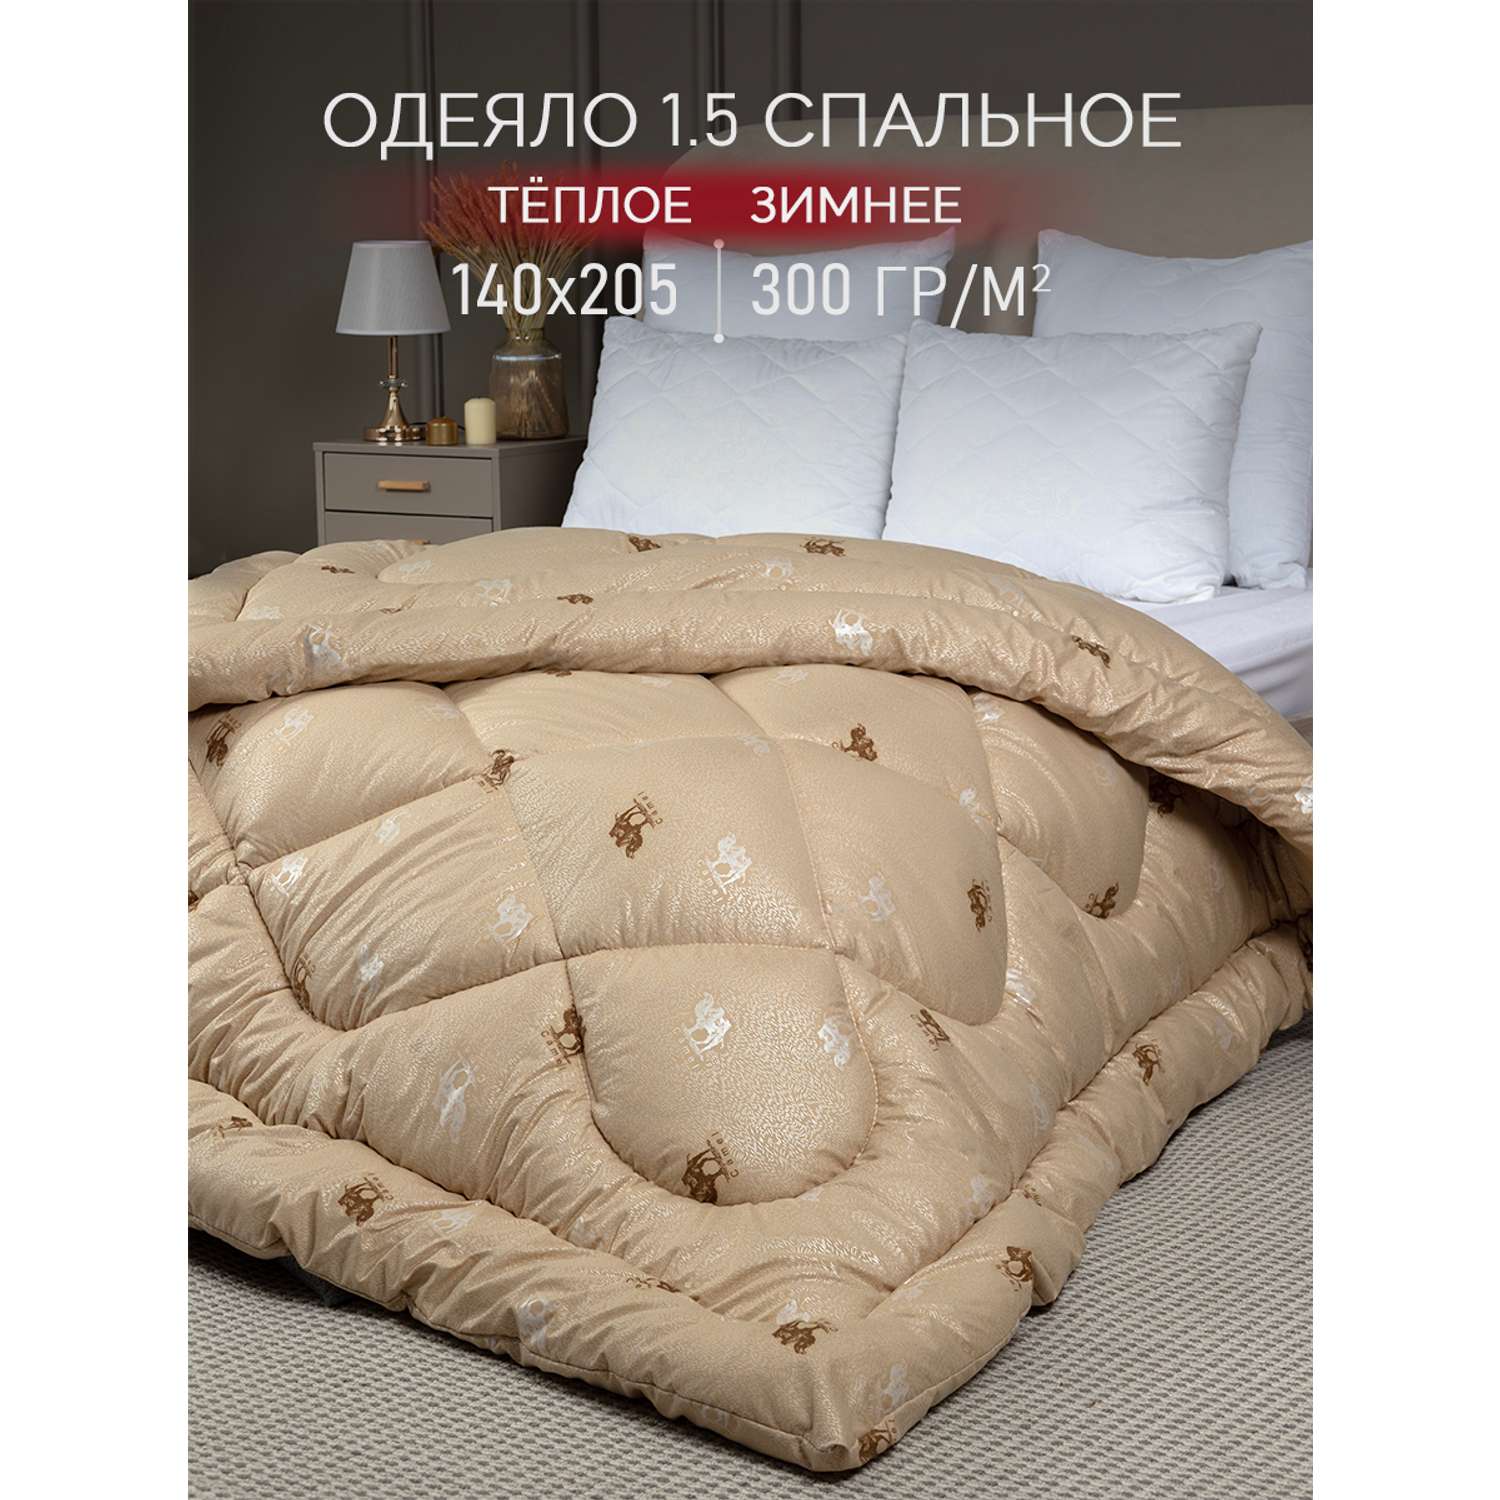 Одеяло 1.5 спальное Galtex 140х205 см - фото 1